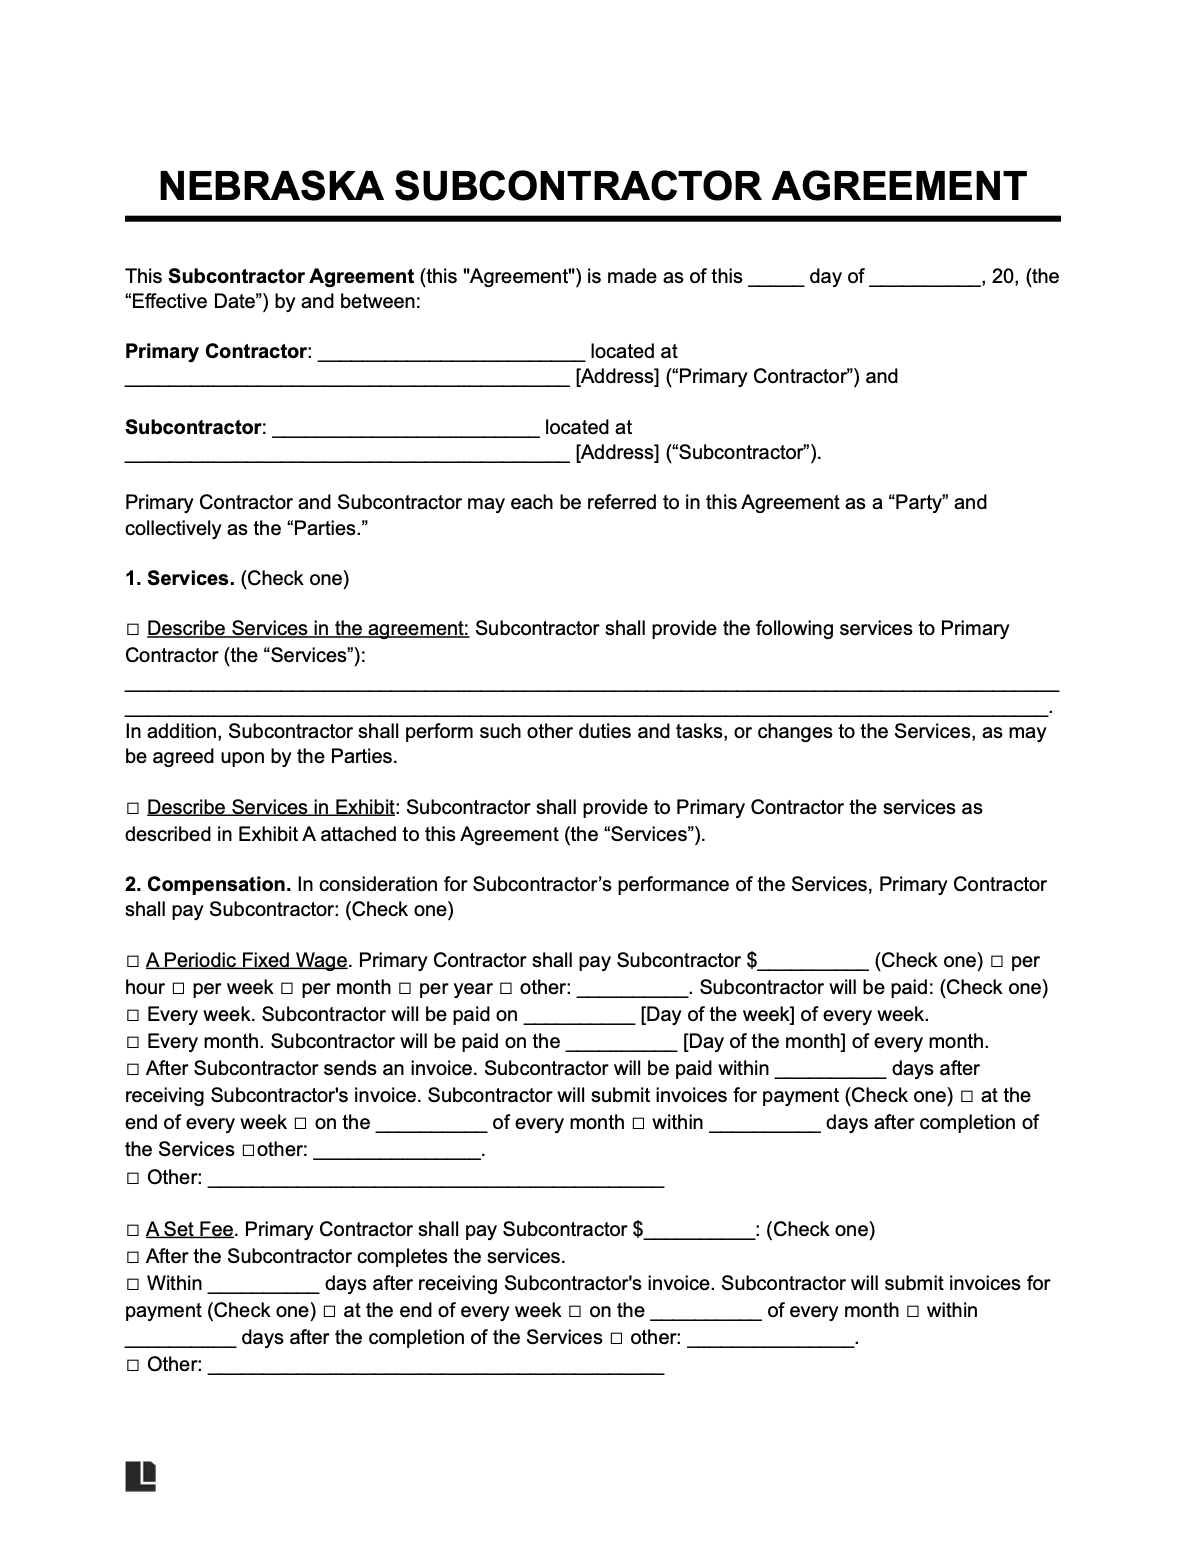 nebraska subcontractor agreement template